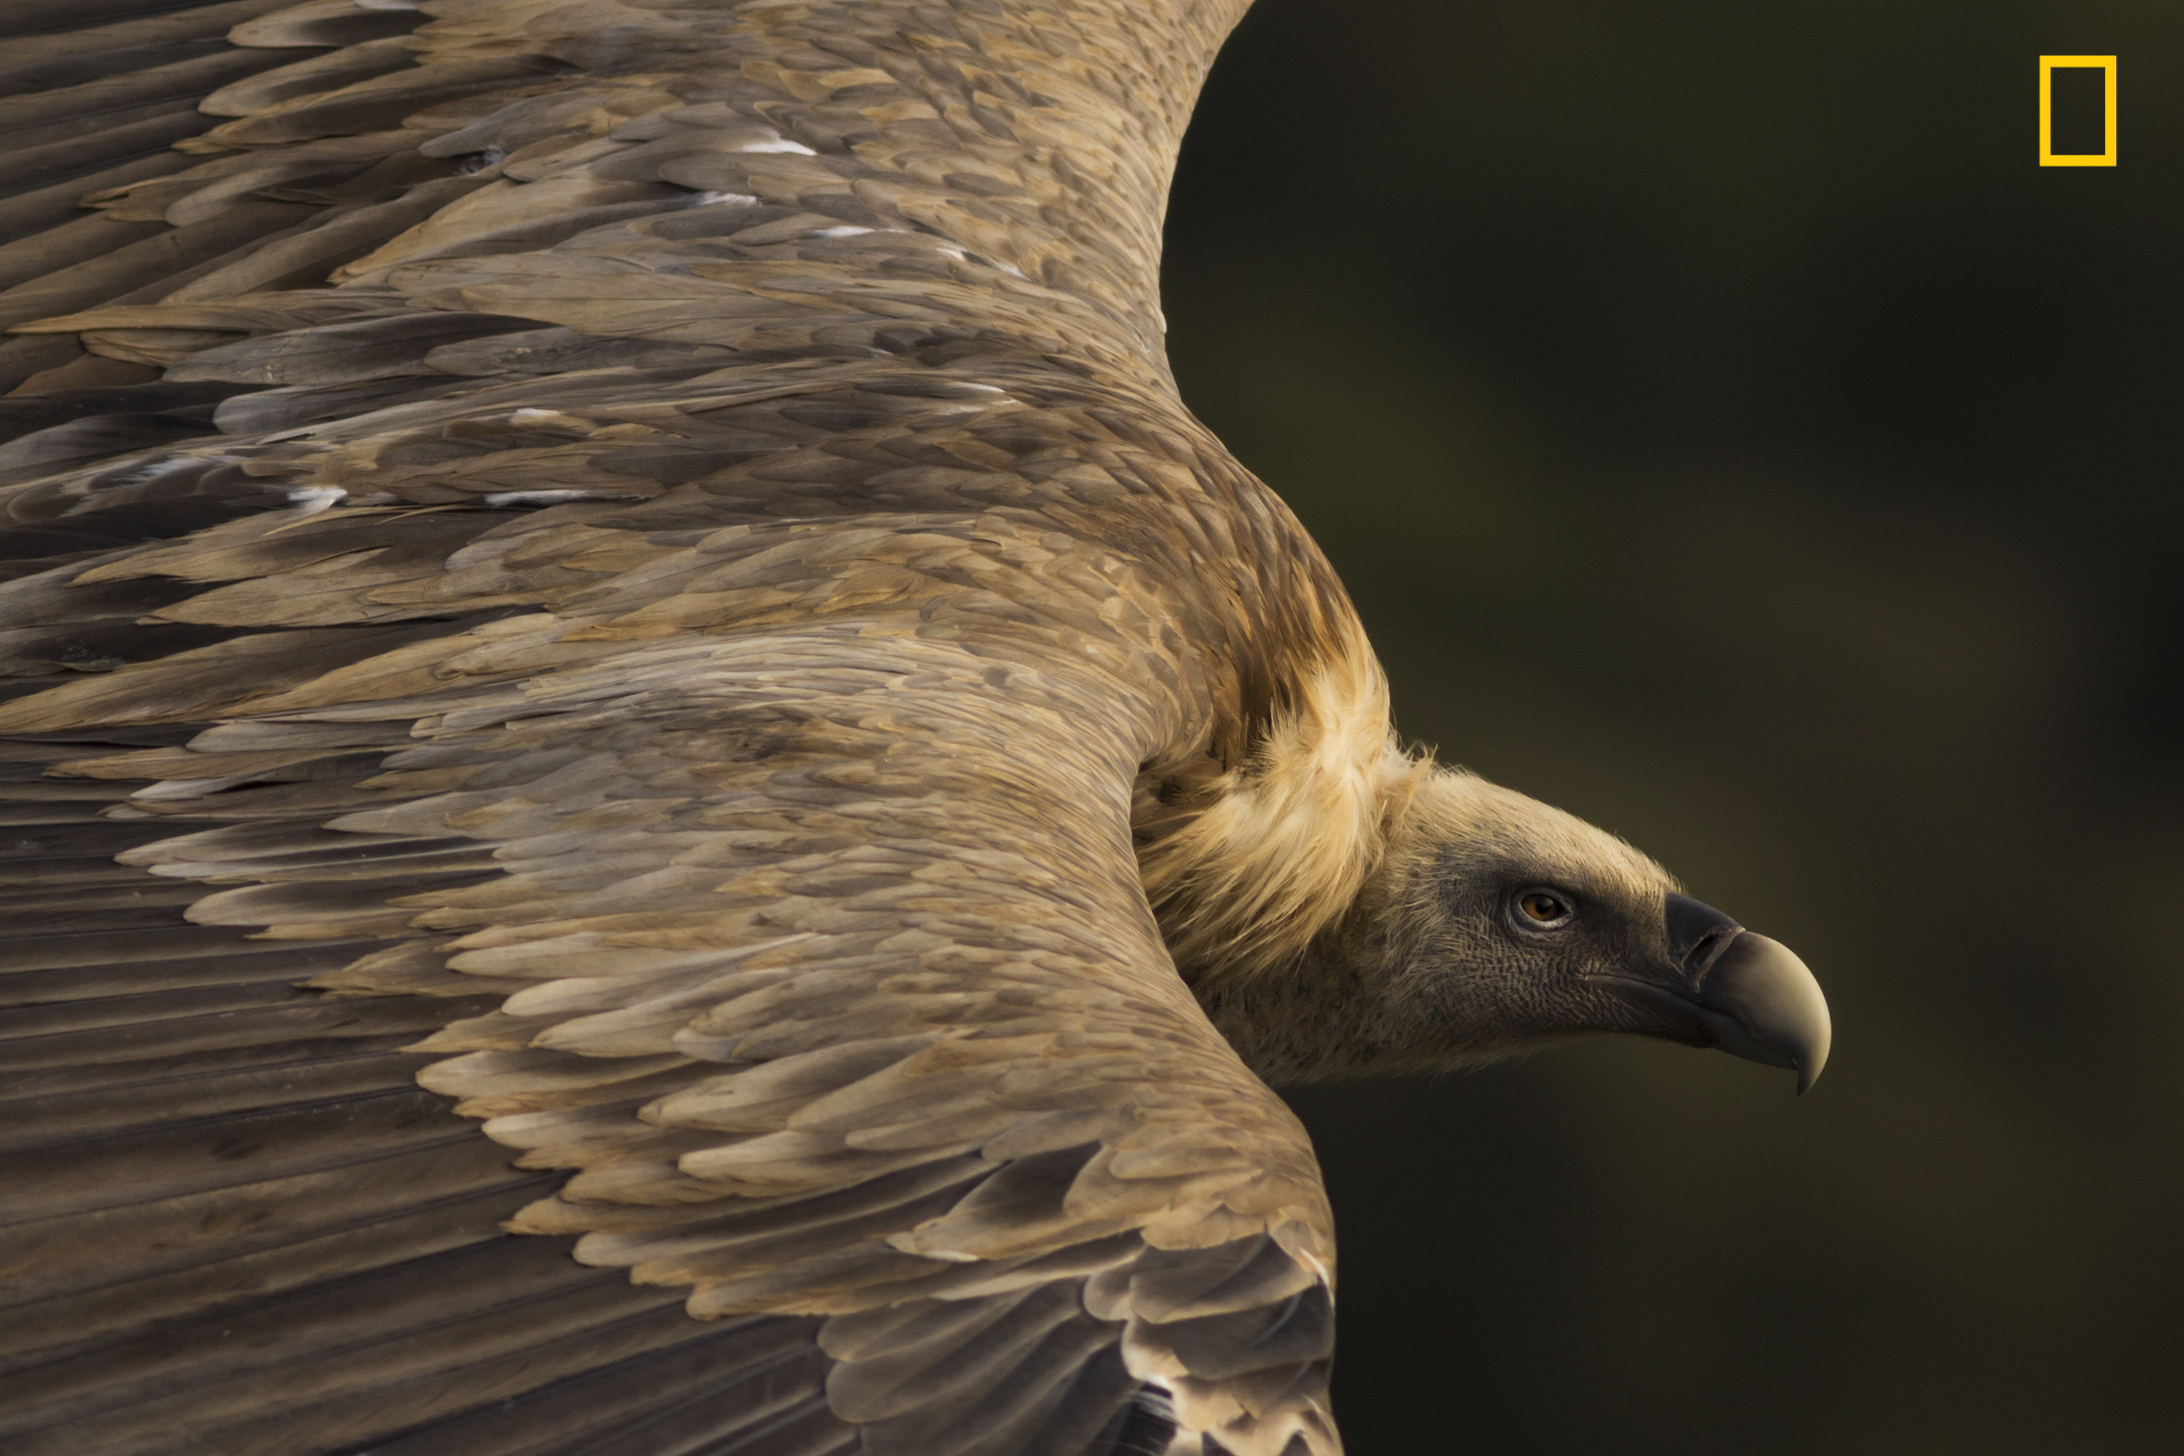 Un vautour fauve, gagnant de la catégorie Nature du National Geographic Travel Photo Contest. © Tamara Blazquez Haik, 2019 National Geographic Travel Photo Contest